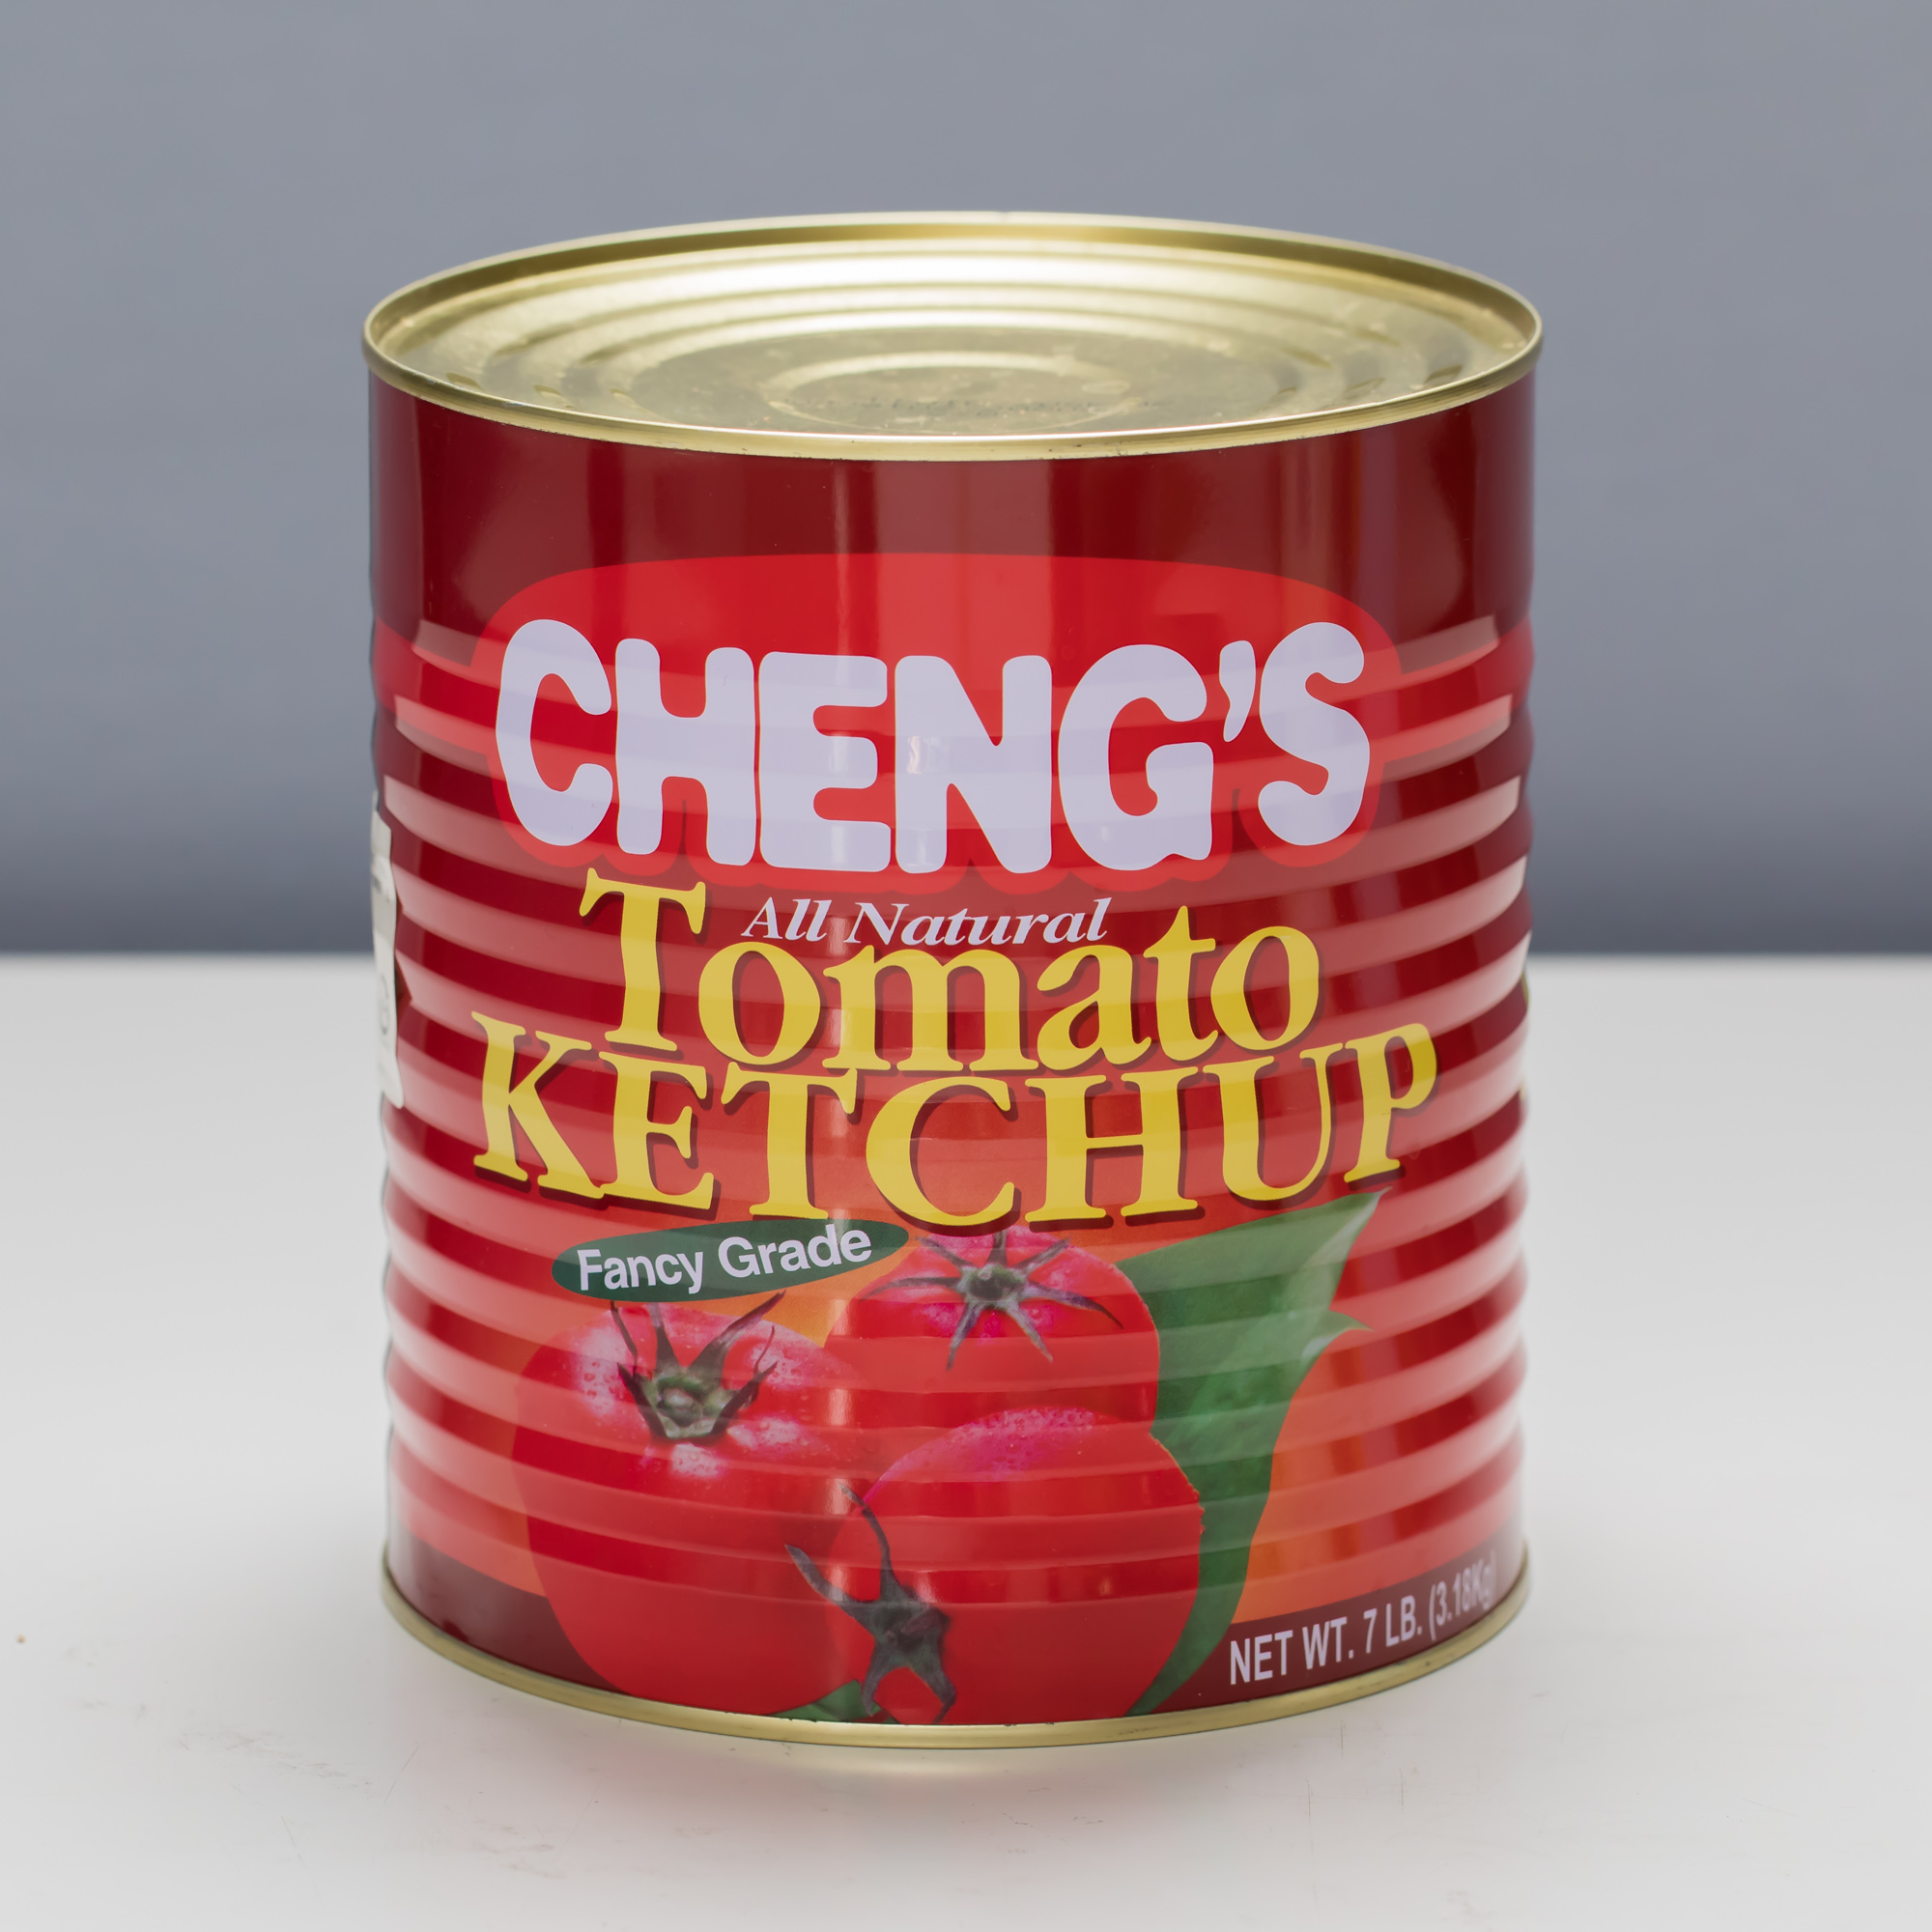 cheng's　ケチャップ　1号缶